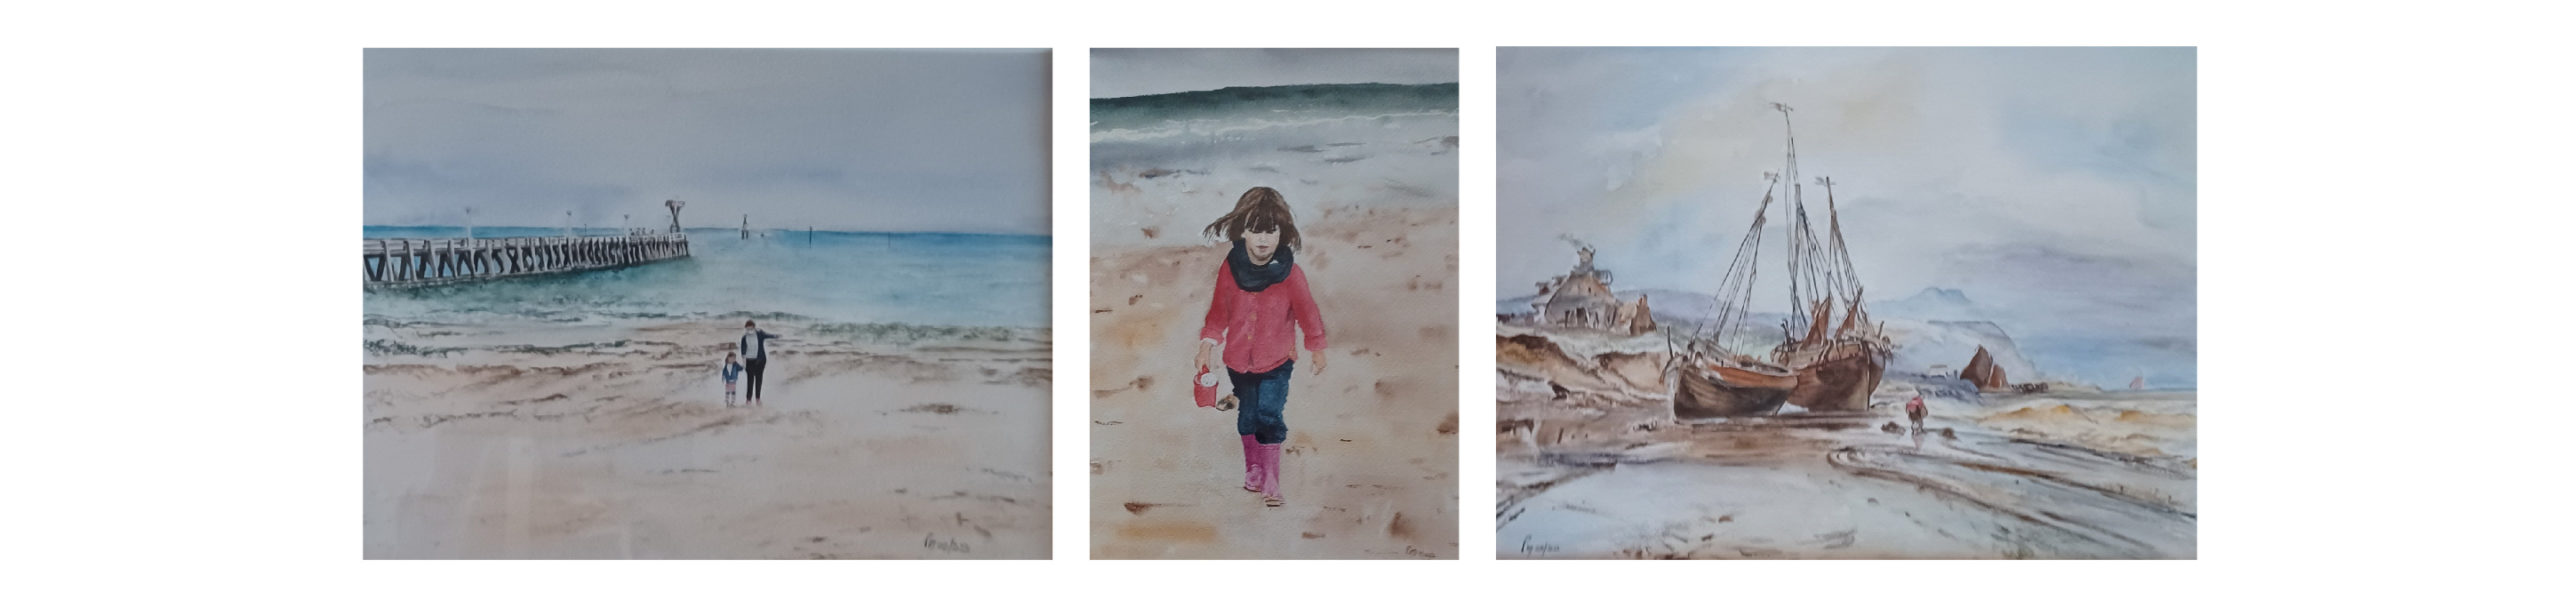 Peintures plage Courseulles sur mer avec la jetée, enfent qui marche sur le sable avec un manteau rouge et peinture d'un bateau échoué sur une plage 